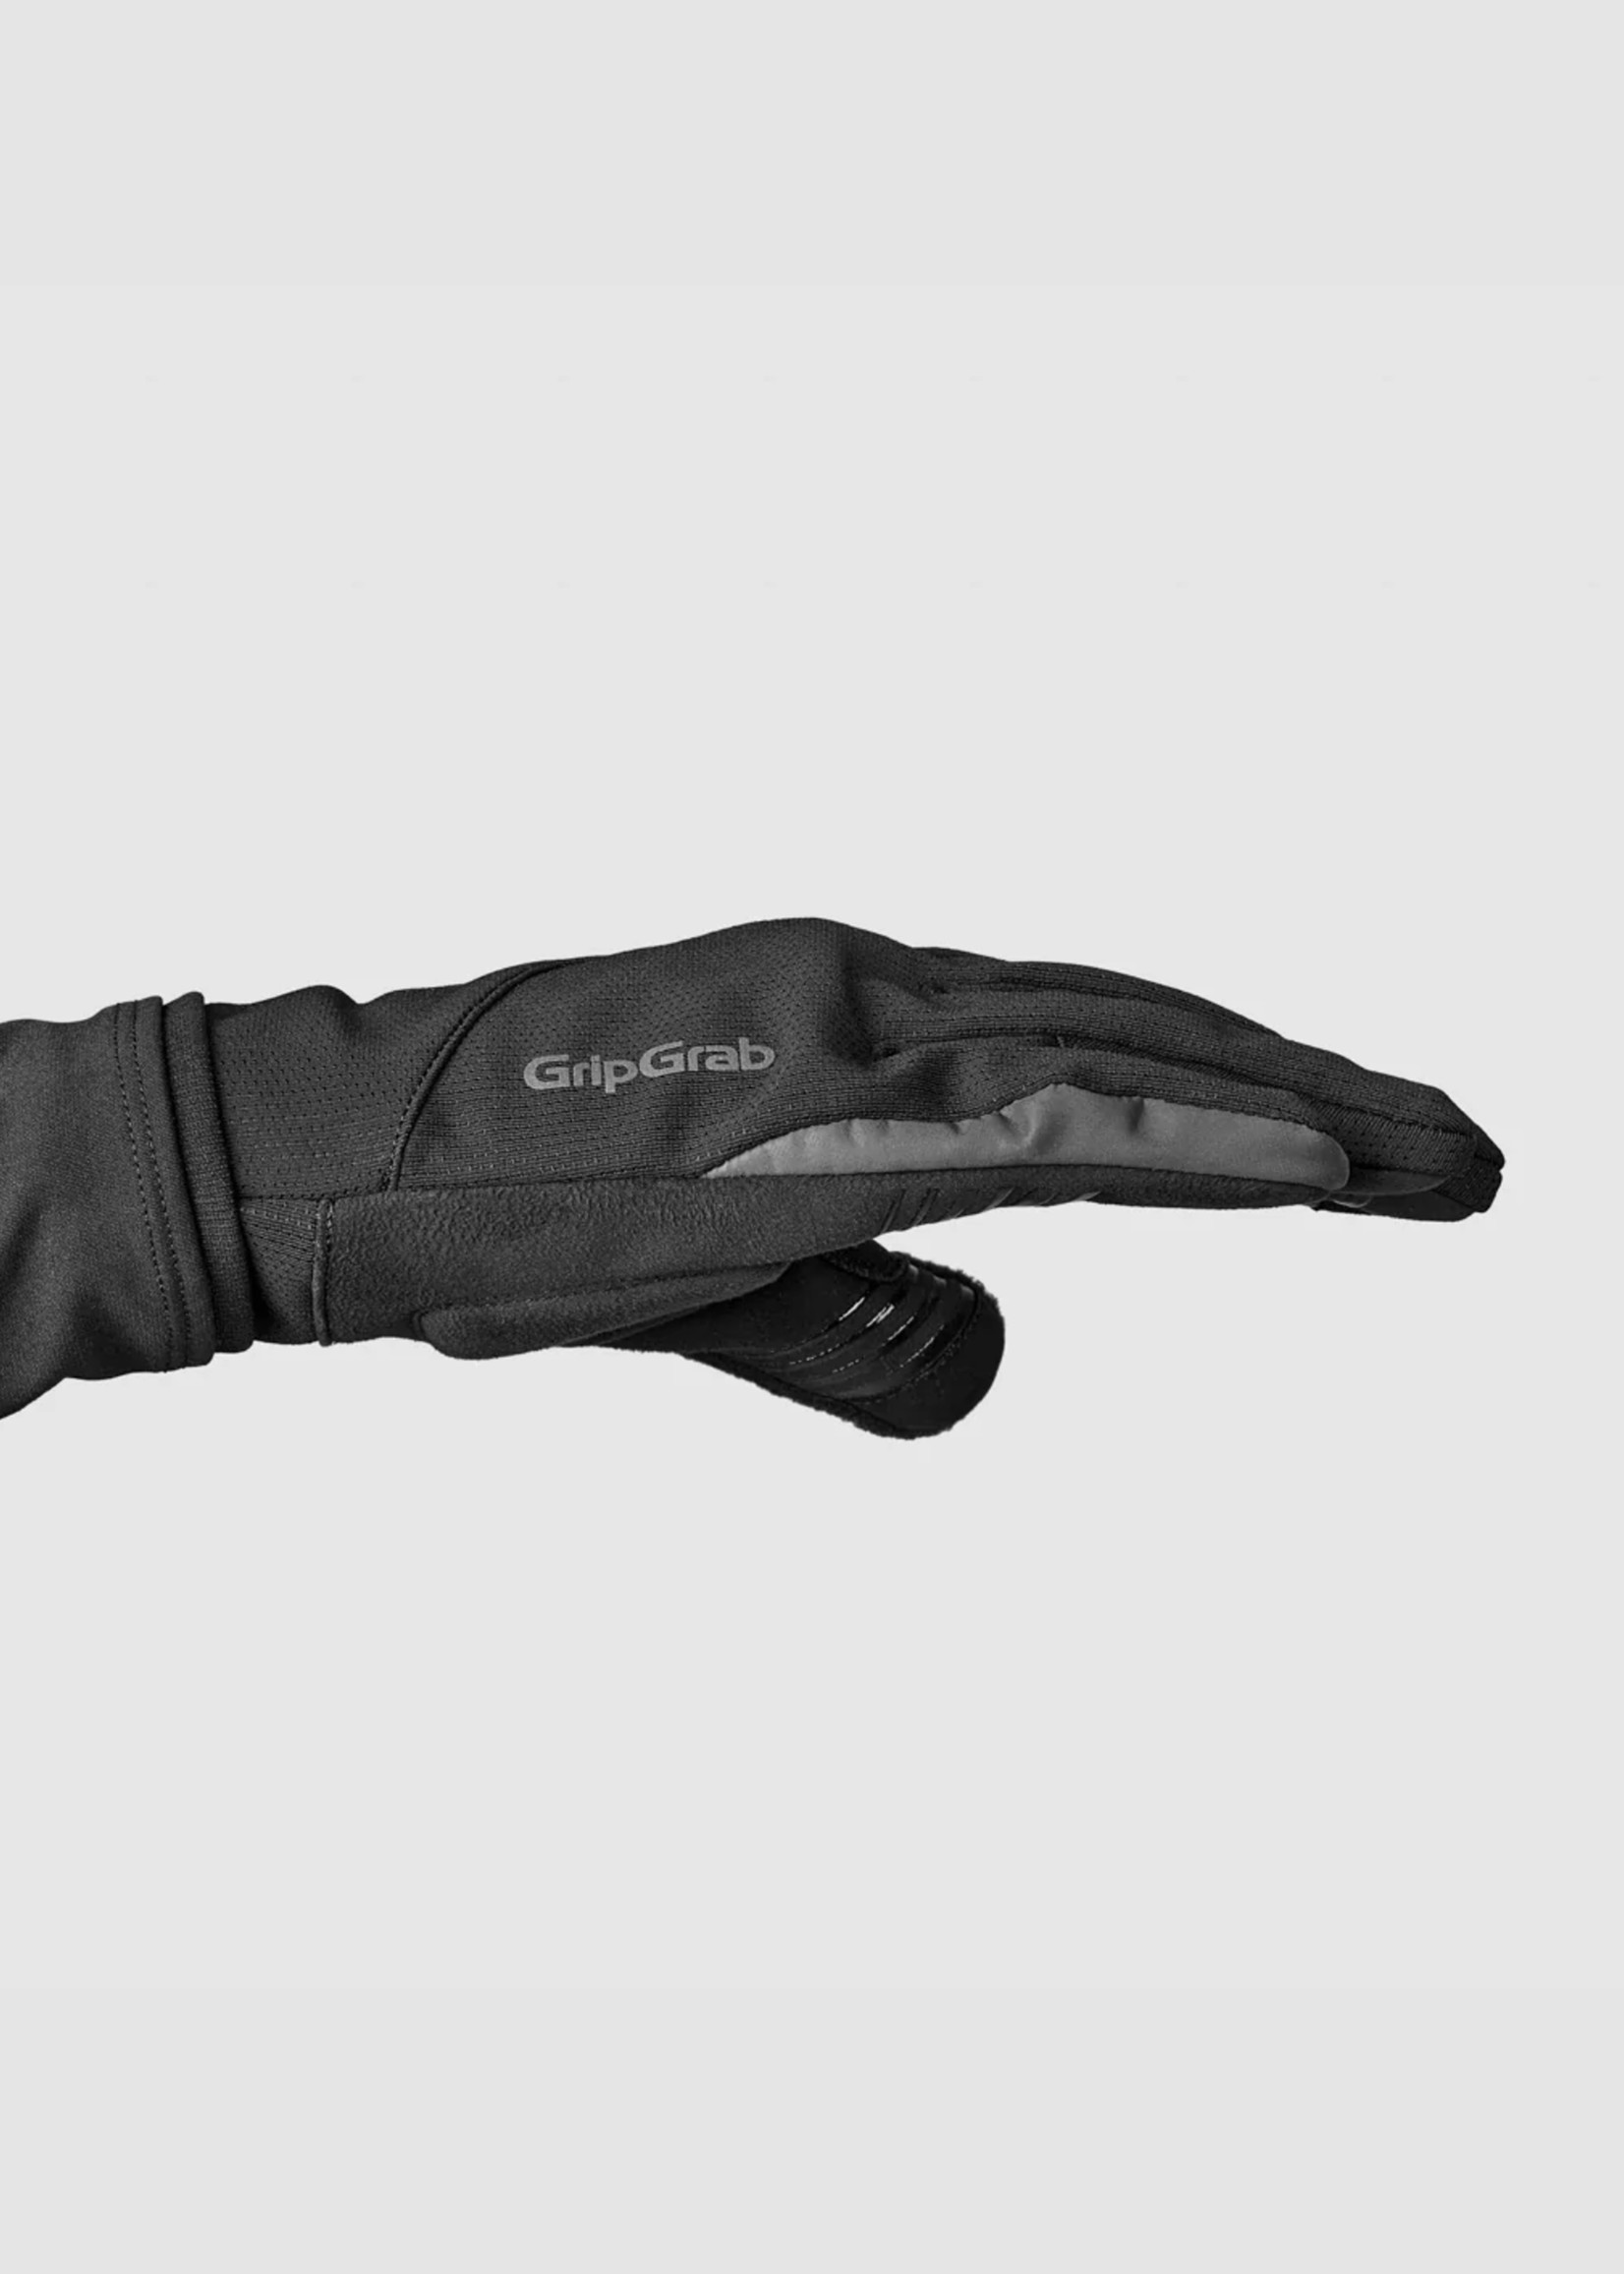 Grip Grab Hurricane 2 Windproof Midseason Gloves